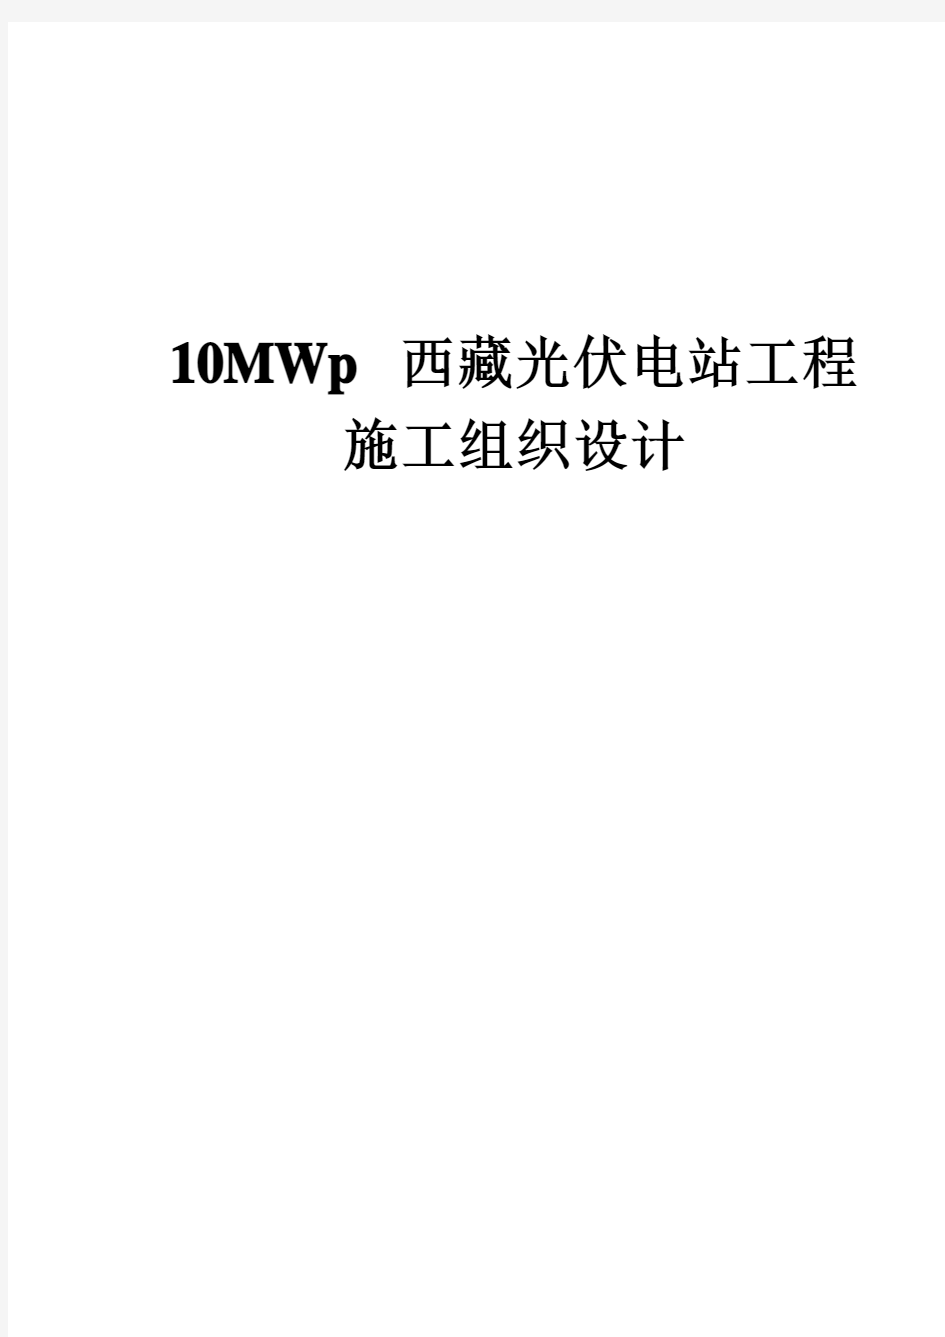 15 10MWp西藏光伏电站工程施工组织设计-47